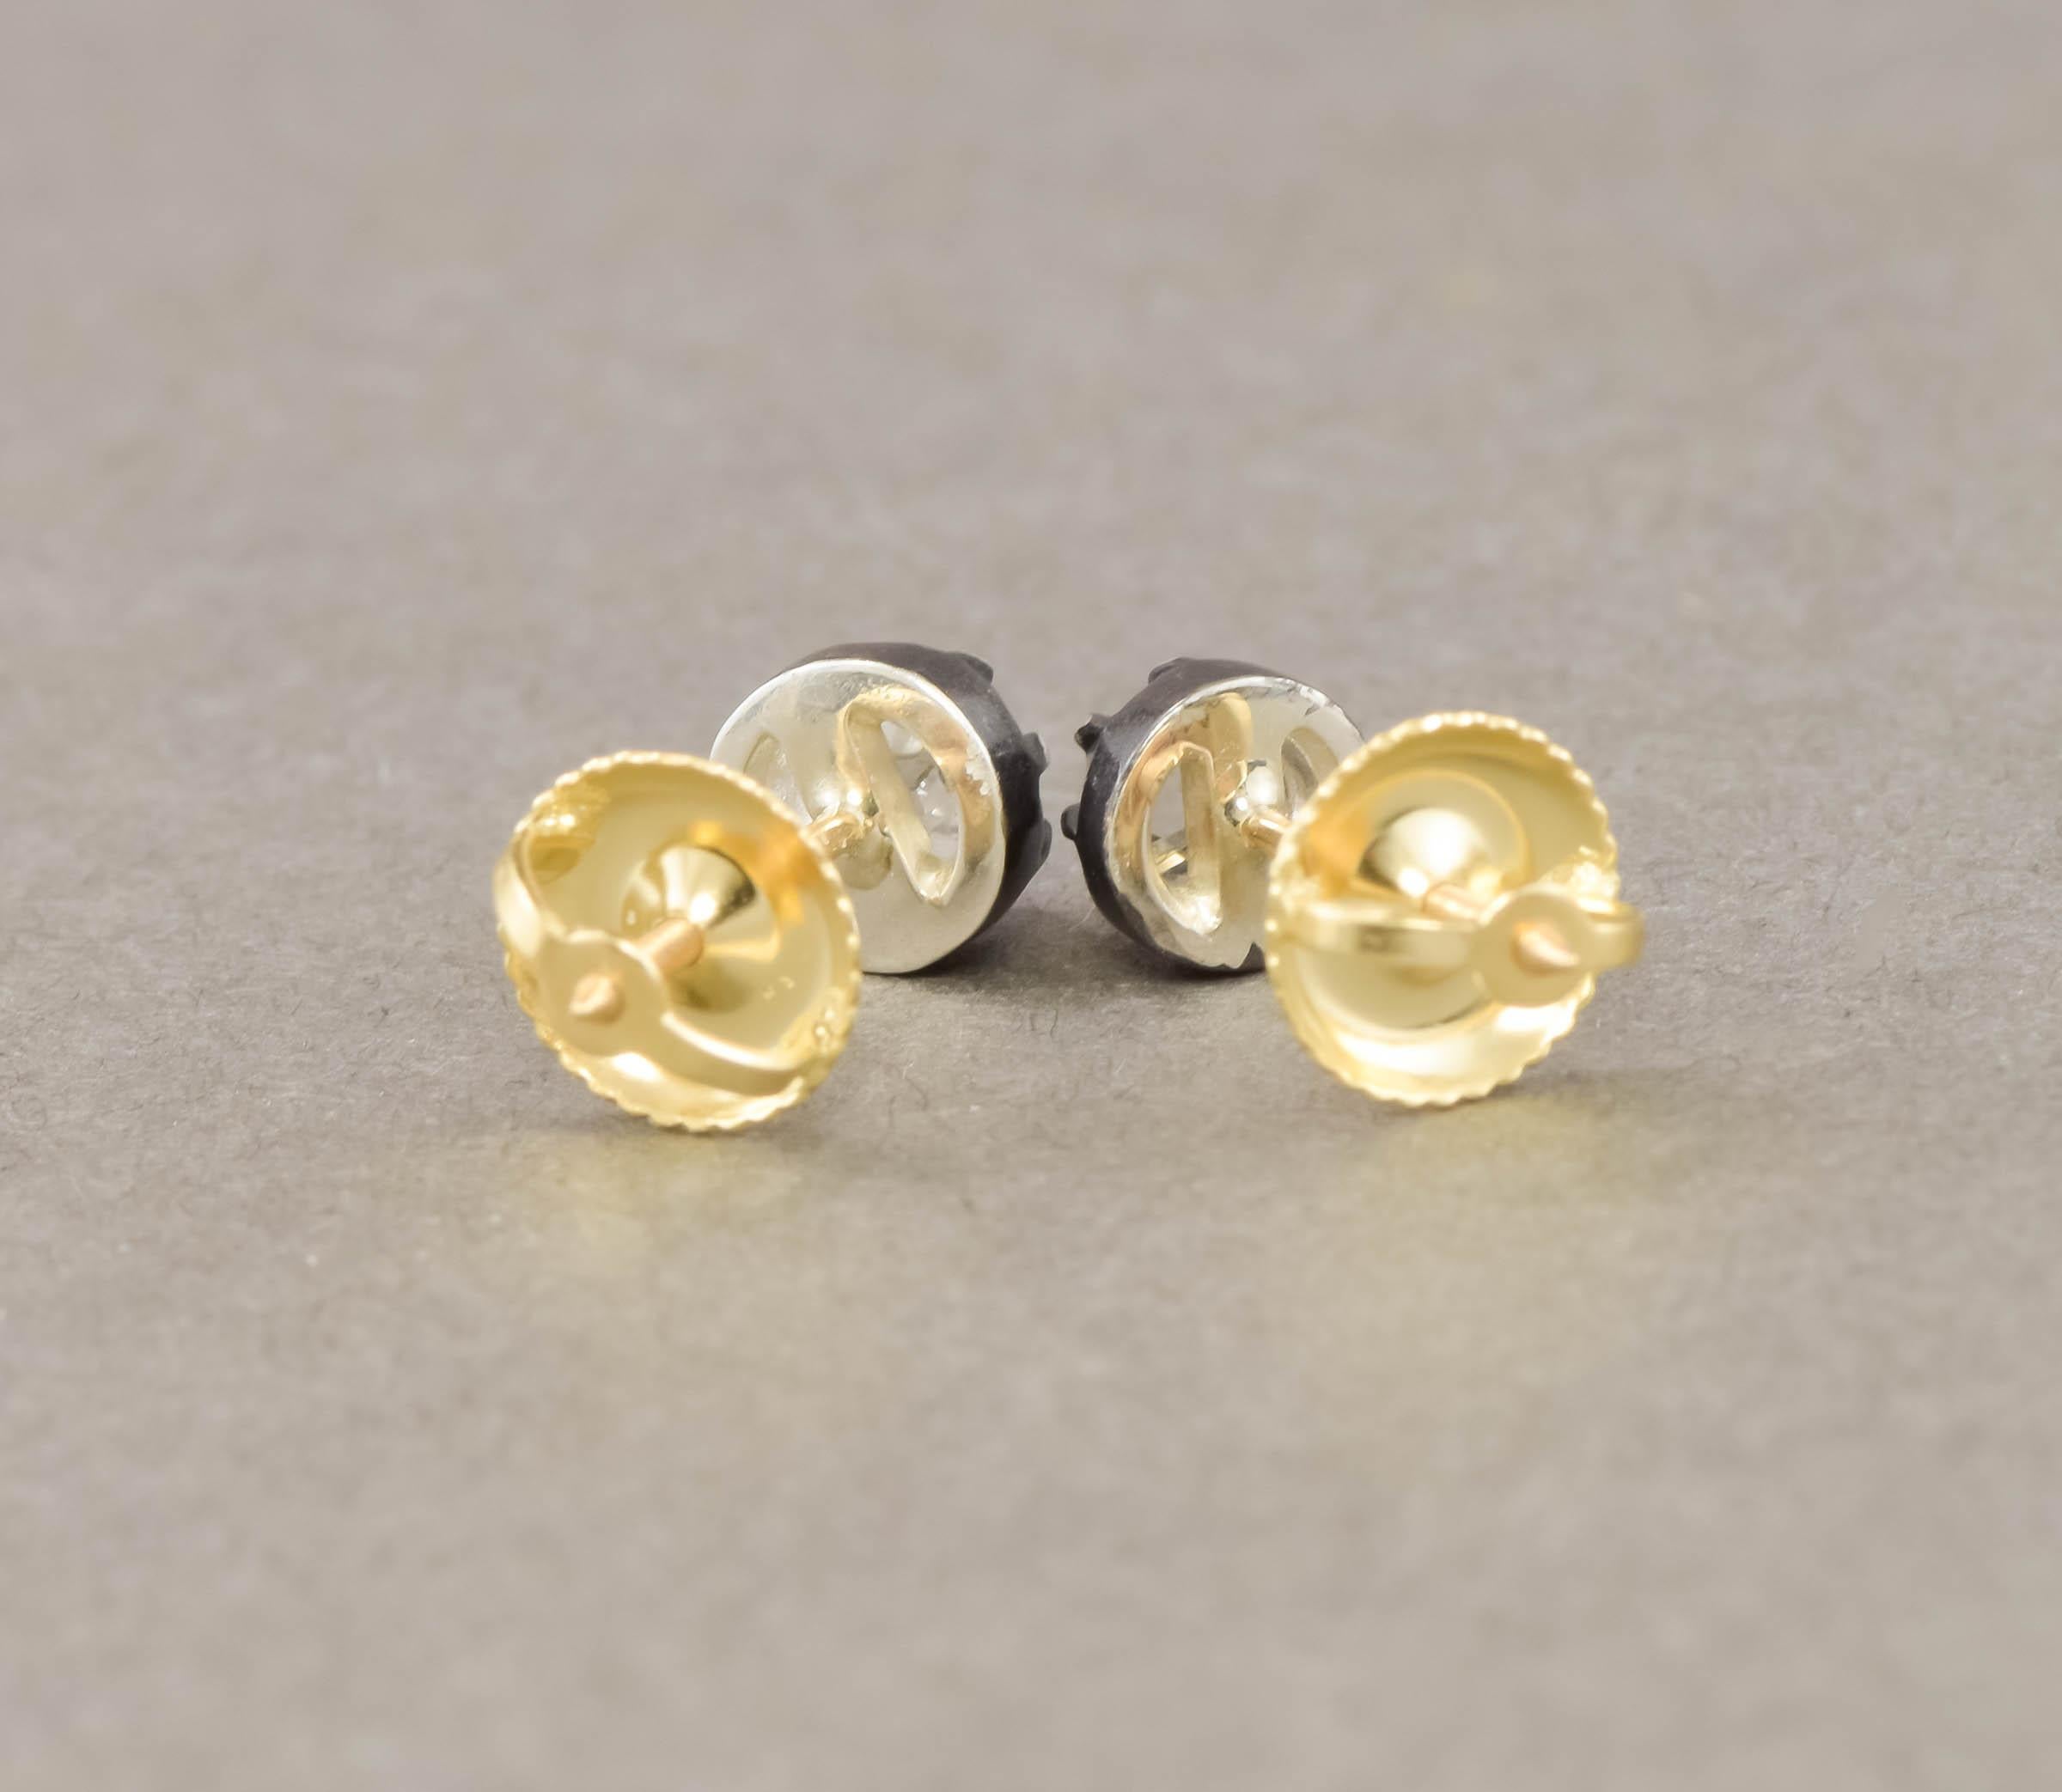 Georgian Old Mine Cut Diamond Stud Earrings in Silver & 18K Gold 6